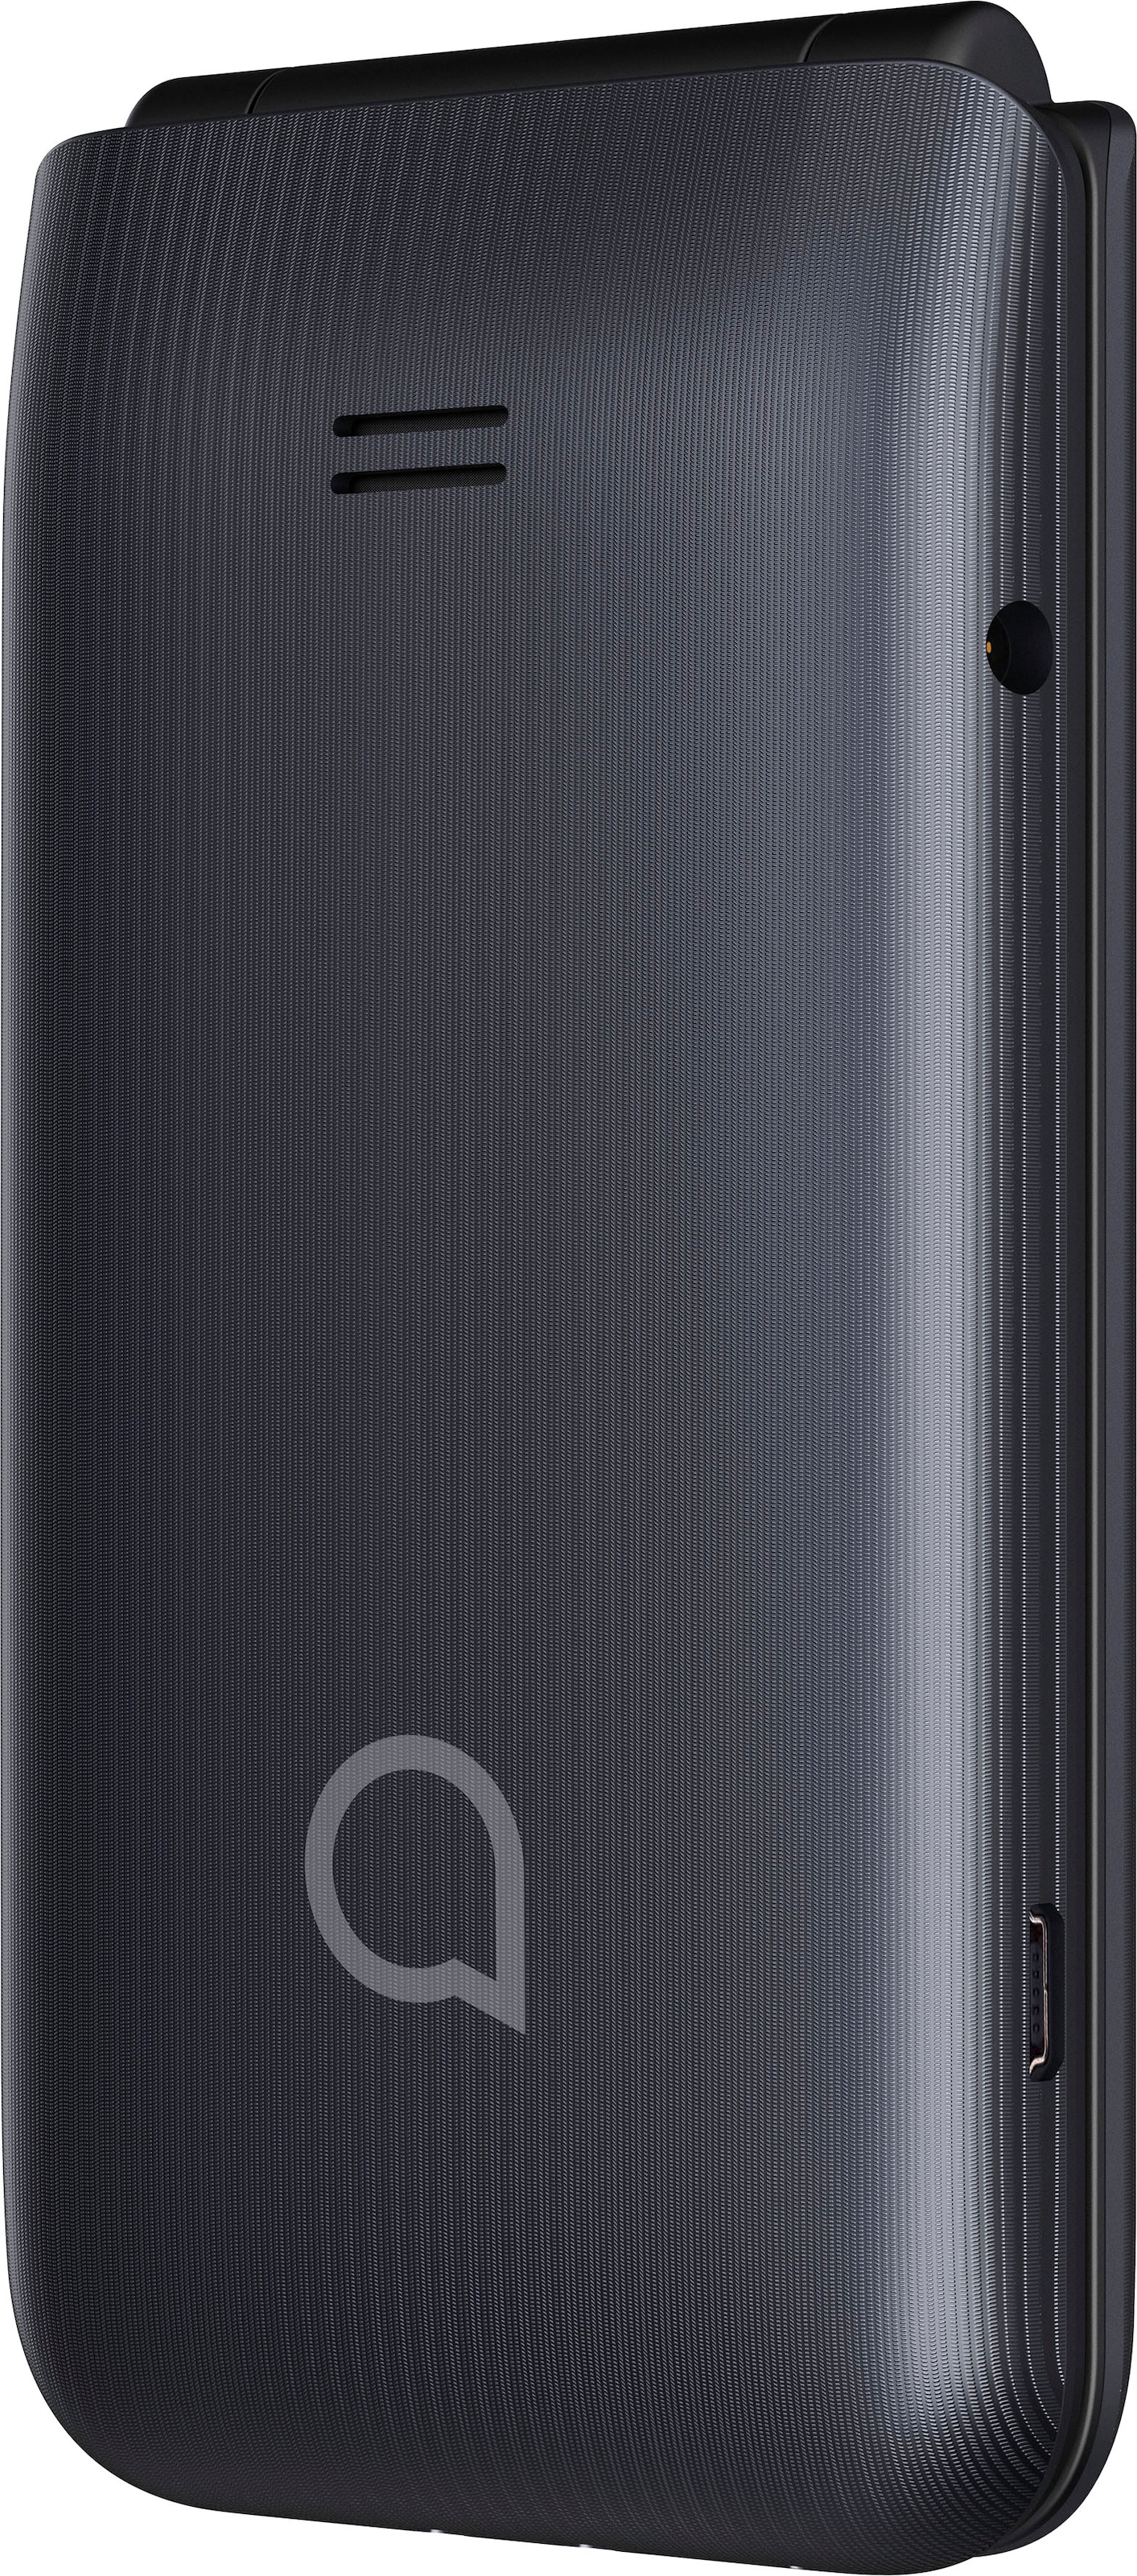 Alcatel Handy »3082«, Dark Gray, 6,1 cm/2,4 Zoll, 0,13 GB Speicherplatz,  1,3 MP Kamera online kaufen